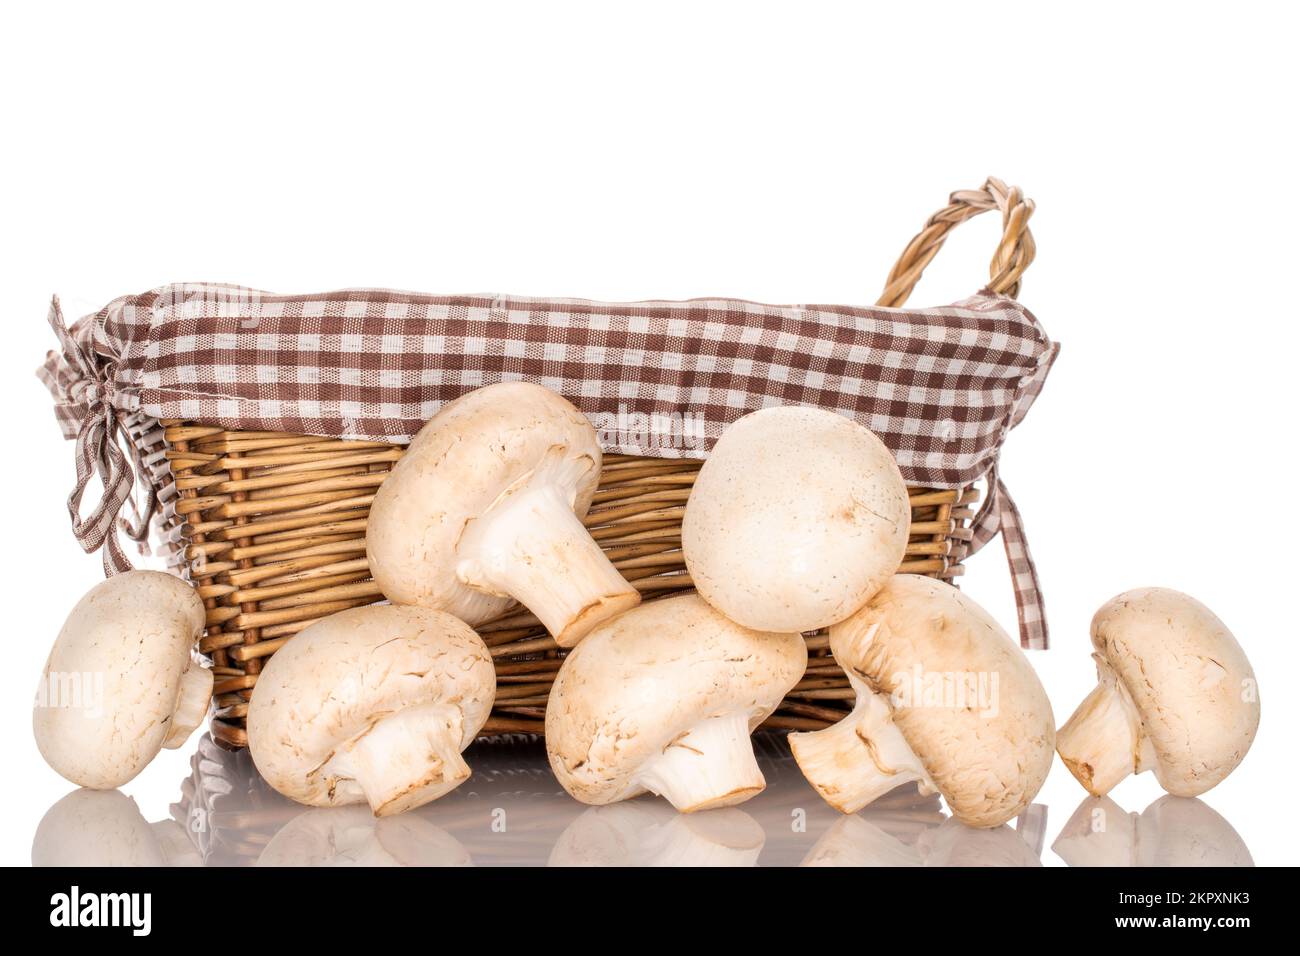 Diversi funghi champignon freschi e biologici con cesto di vimini, primo piano, su sfondo bianco. Foto Stock